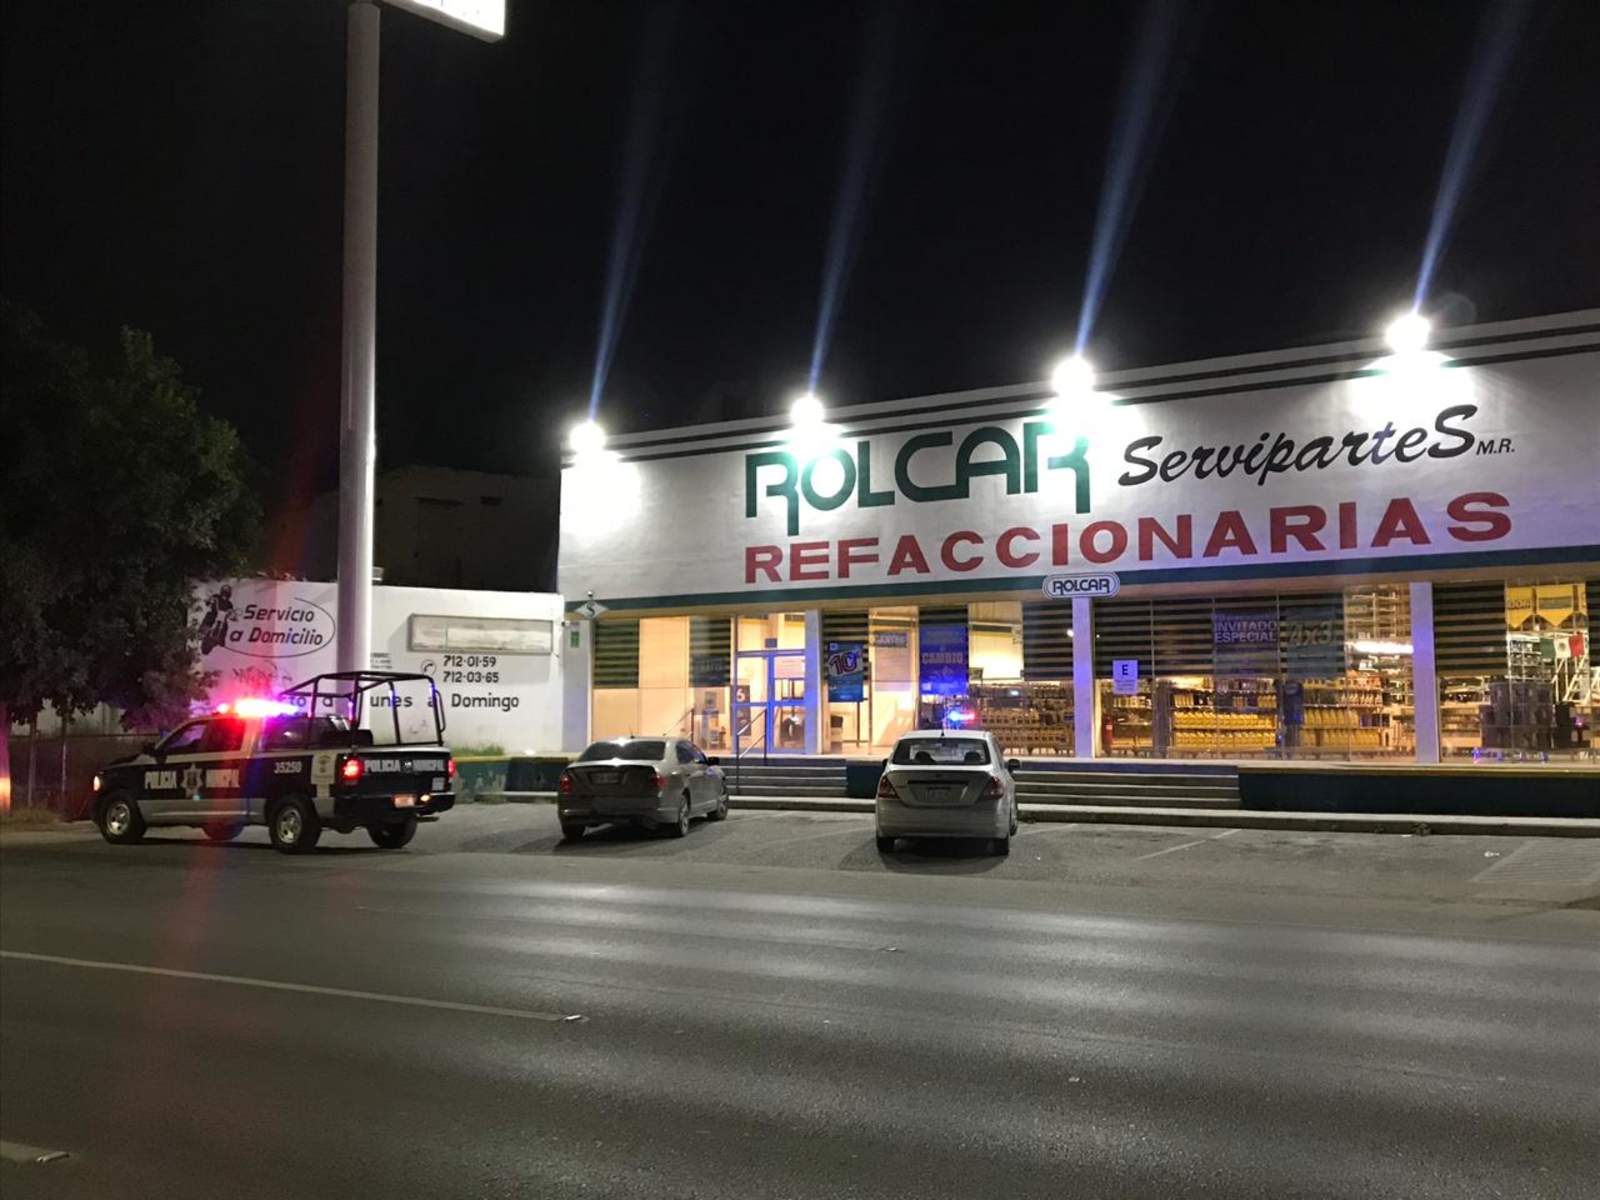 El asaltó se registró aproximadamente a las 18:30 horas en la refaccionaria denominada Rolcar Servipartes, ubicada en bulevar Independencia entre las calles Falcón y Blanco, de la zona centro de Torreón. (ESPECIAL)